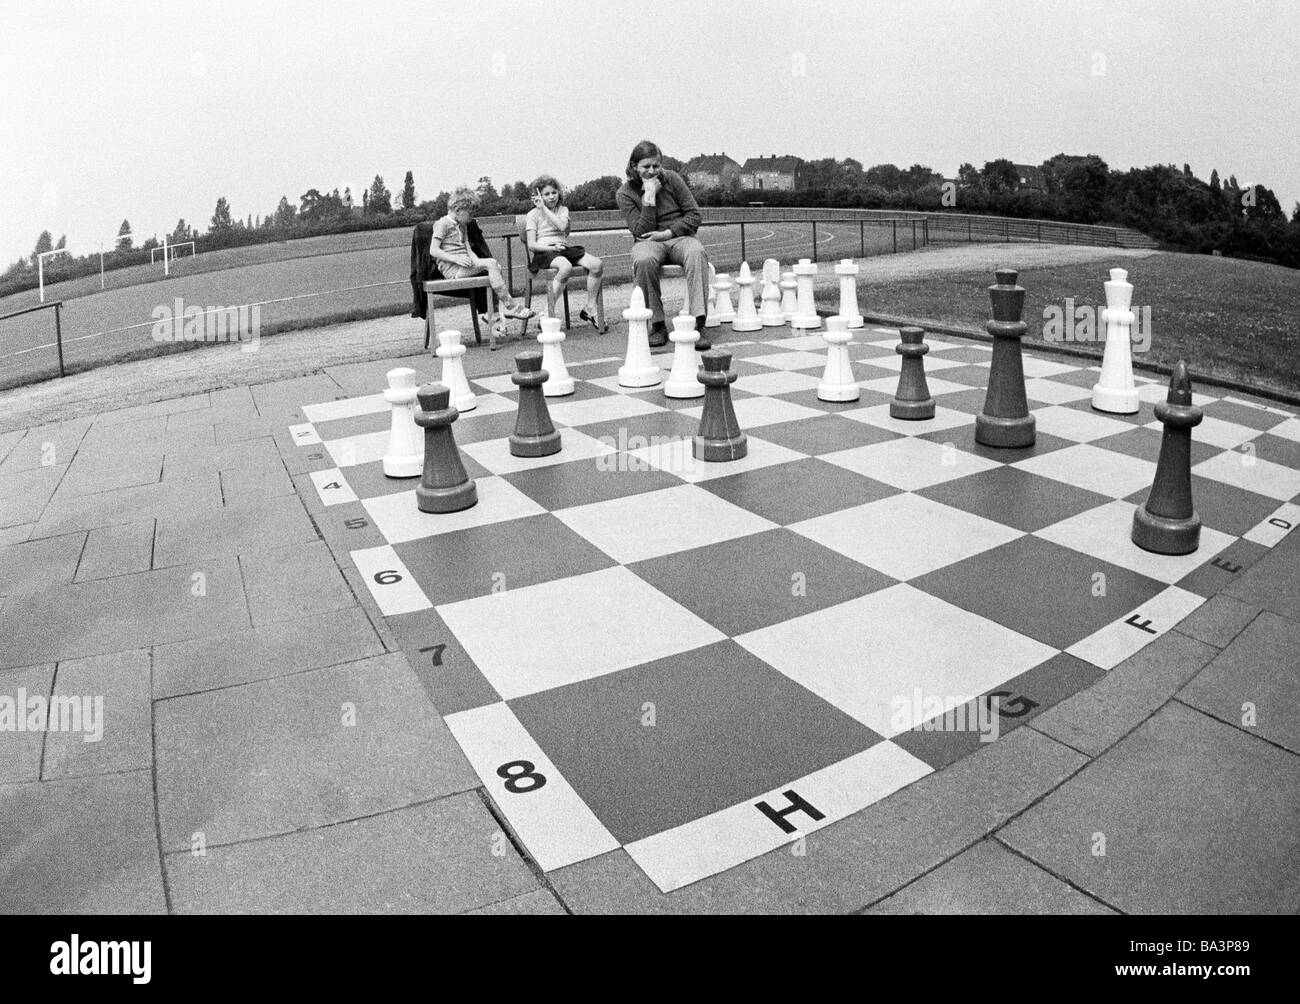 70er Jahre, schwarz / weiß Foto, Freizeit, Menschen spielen bei einem großen Freiluft-Schachspiel Stockfoto